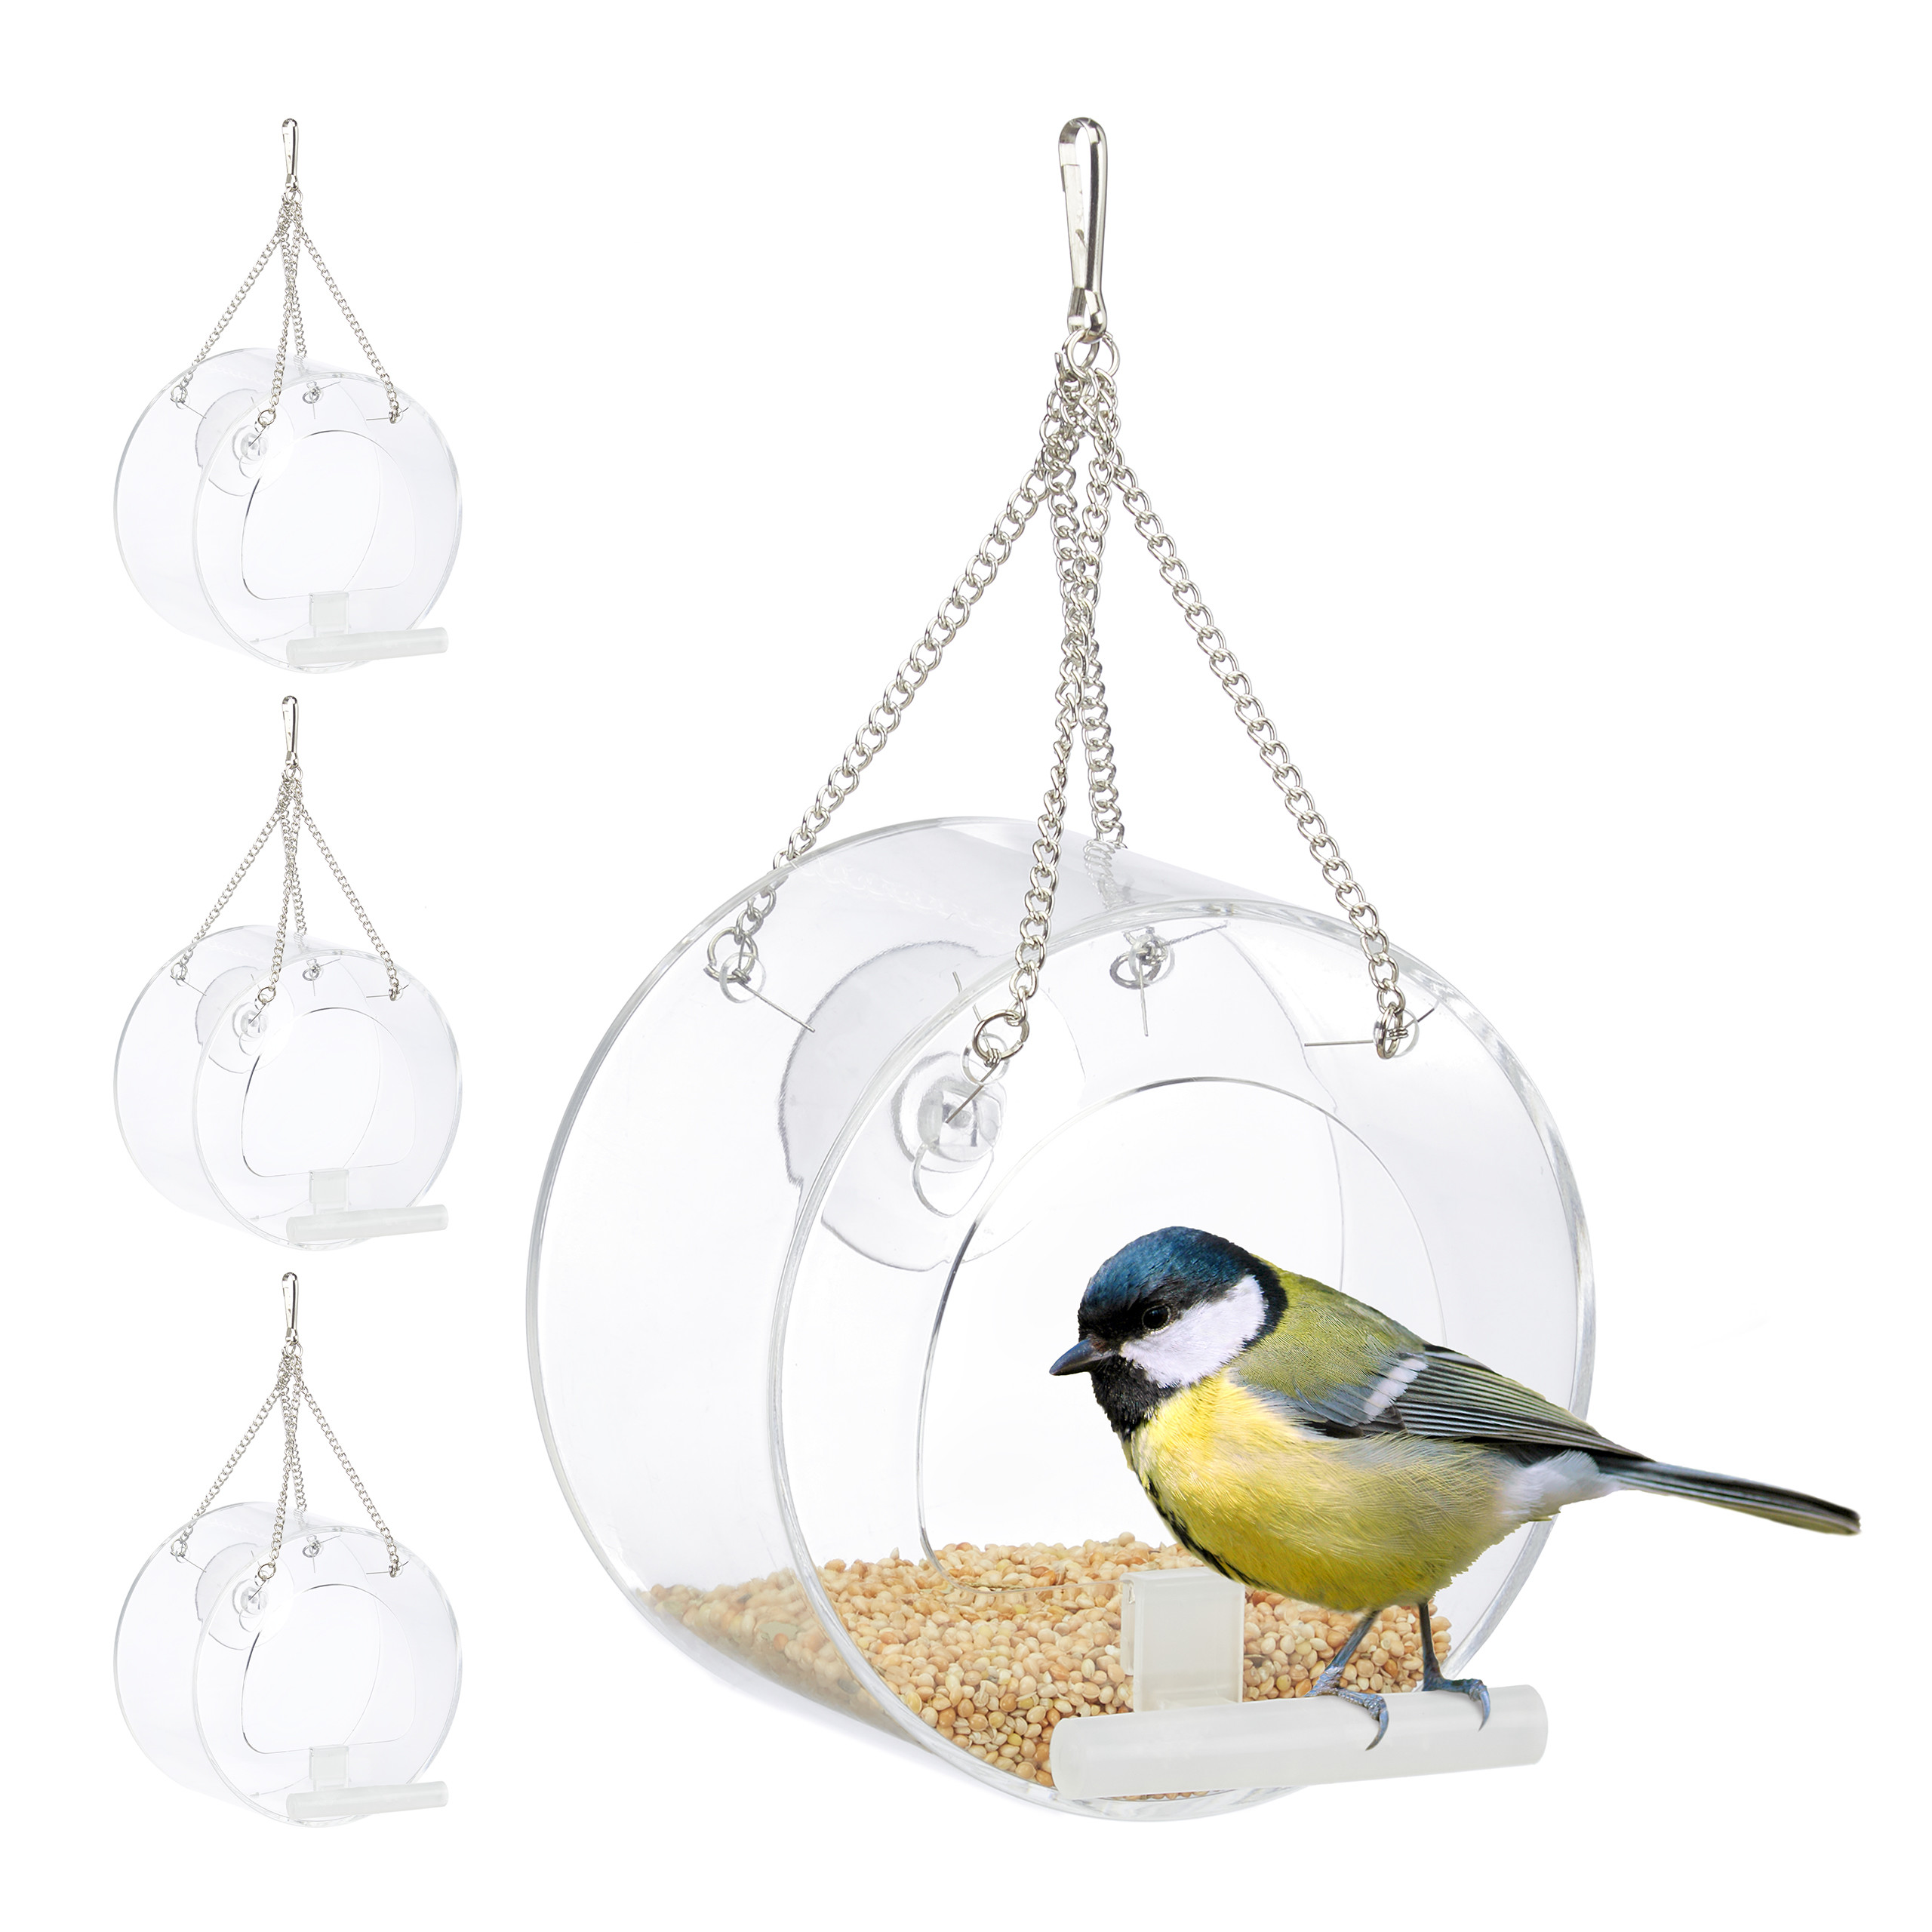 Mangeoire à oiseaux en métal - D 21,8 cm x H 27 cm - Gris